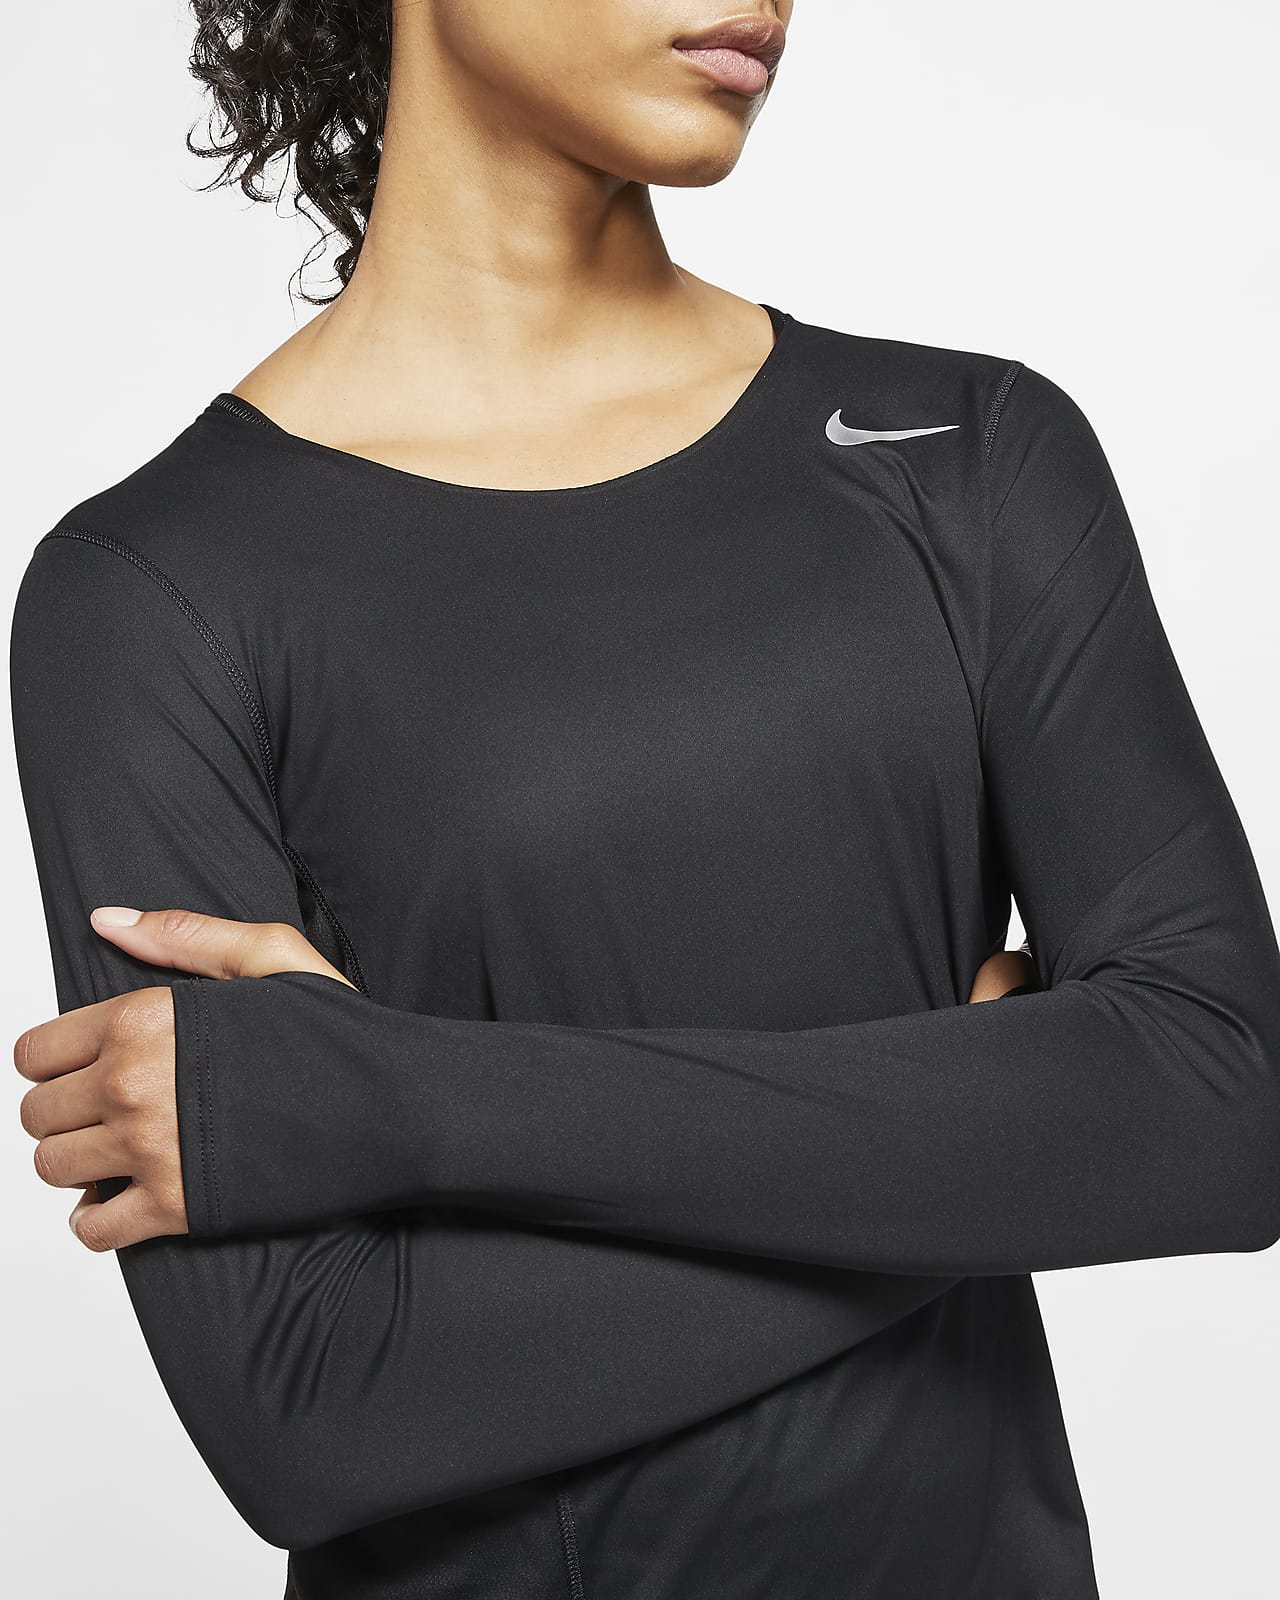 women's nike long sleeve running top